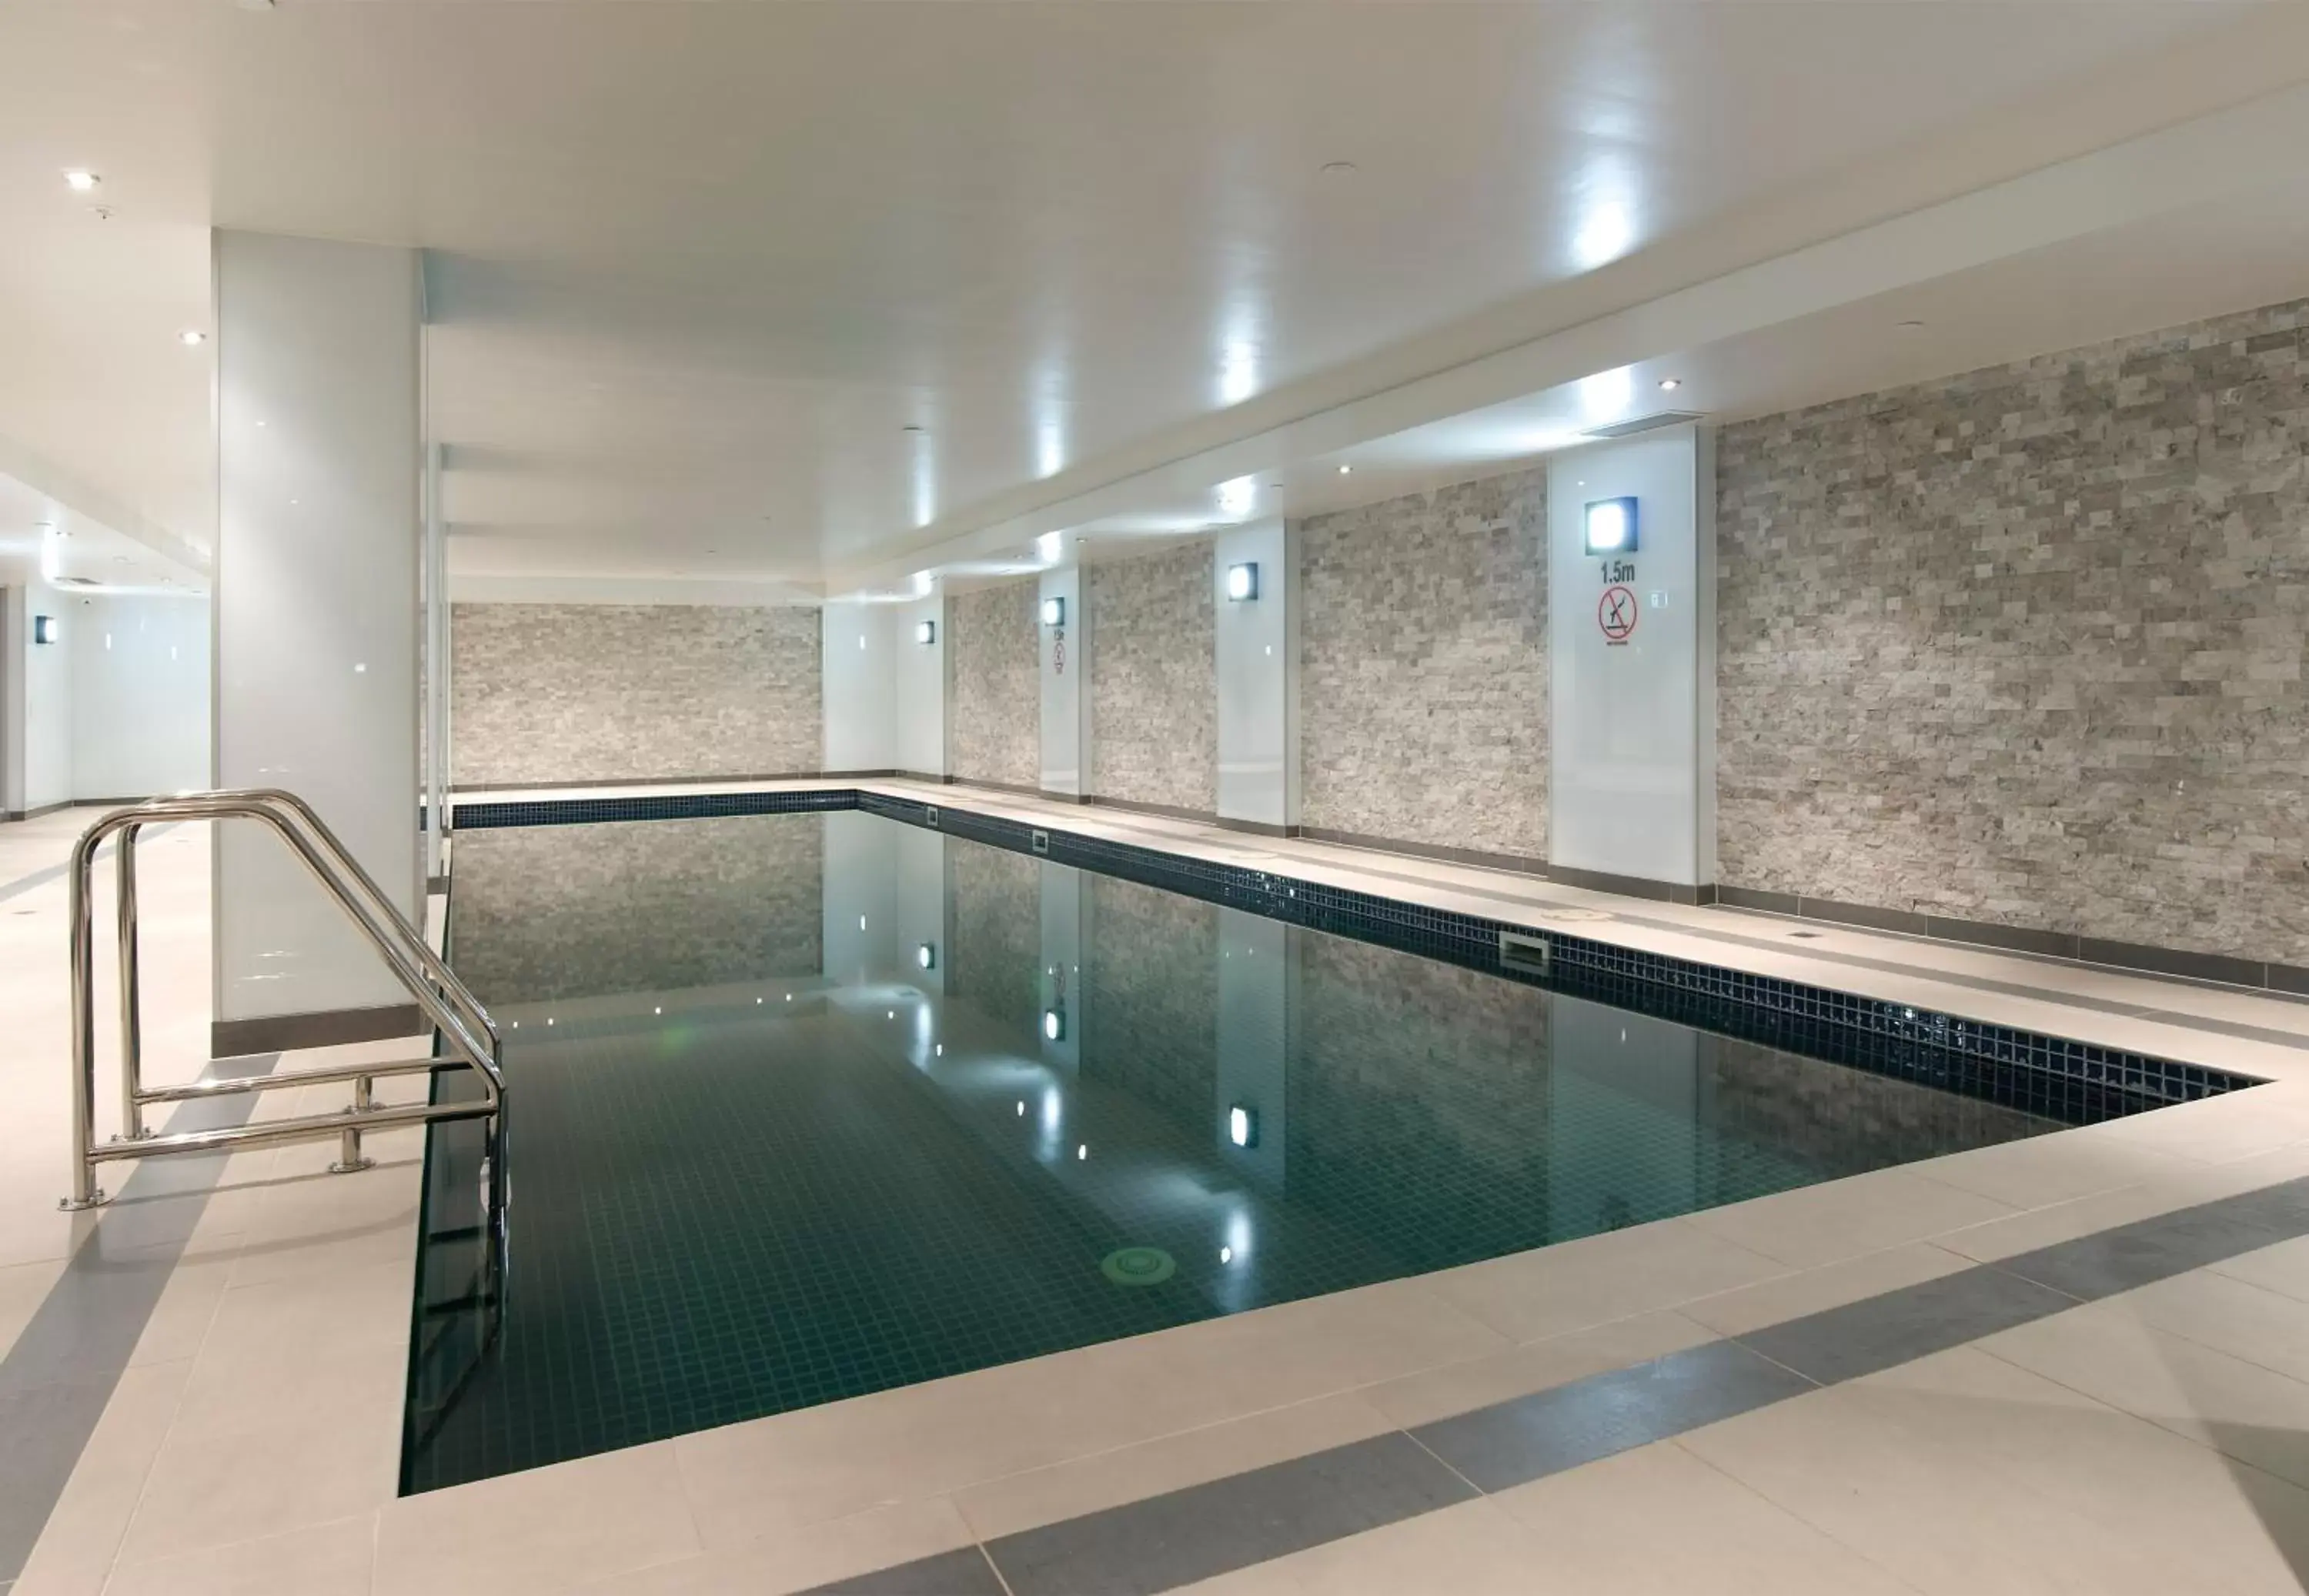 Swimming Pool in Atlantis Hotel Melbourne